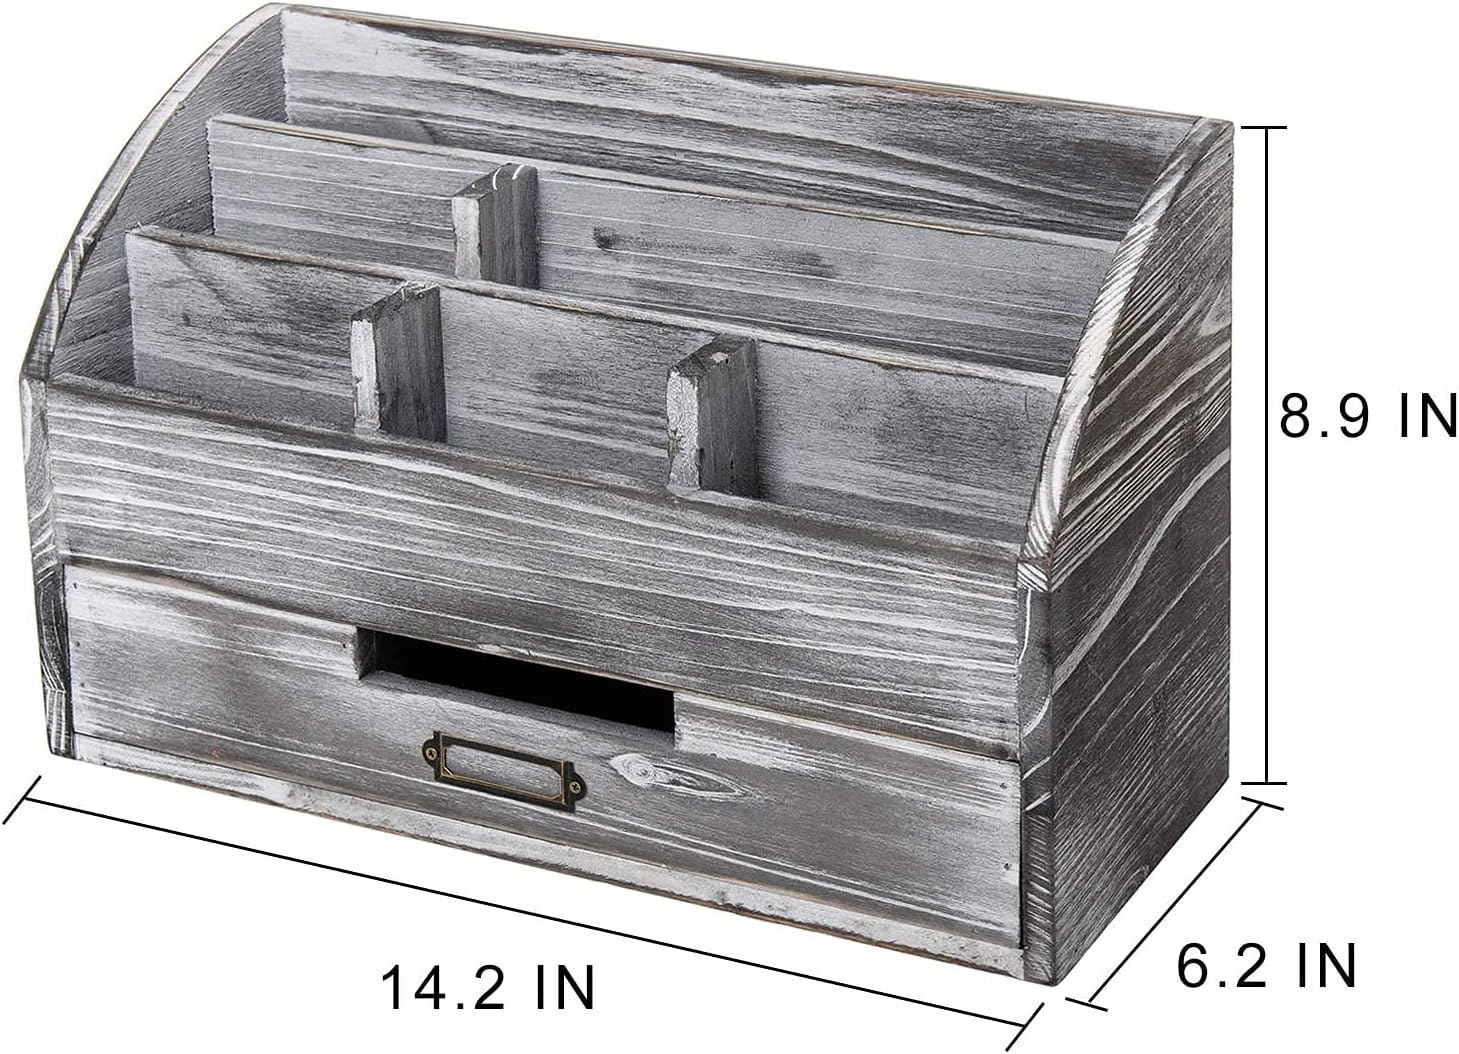 Organizador de cajones de escritorio de madera, organizador de escritorio  con cajones, caja de almacenamiento de madera de mesa vintage, para